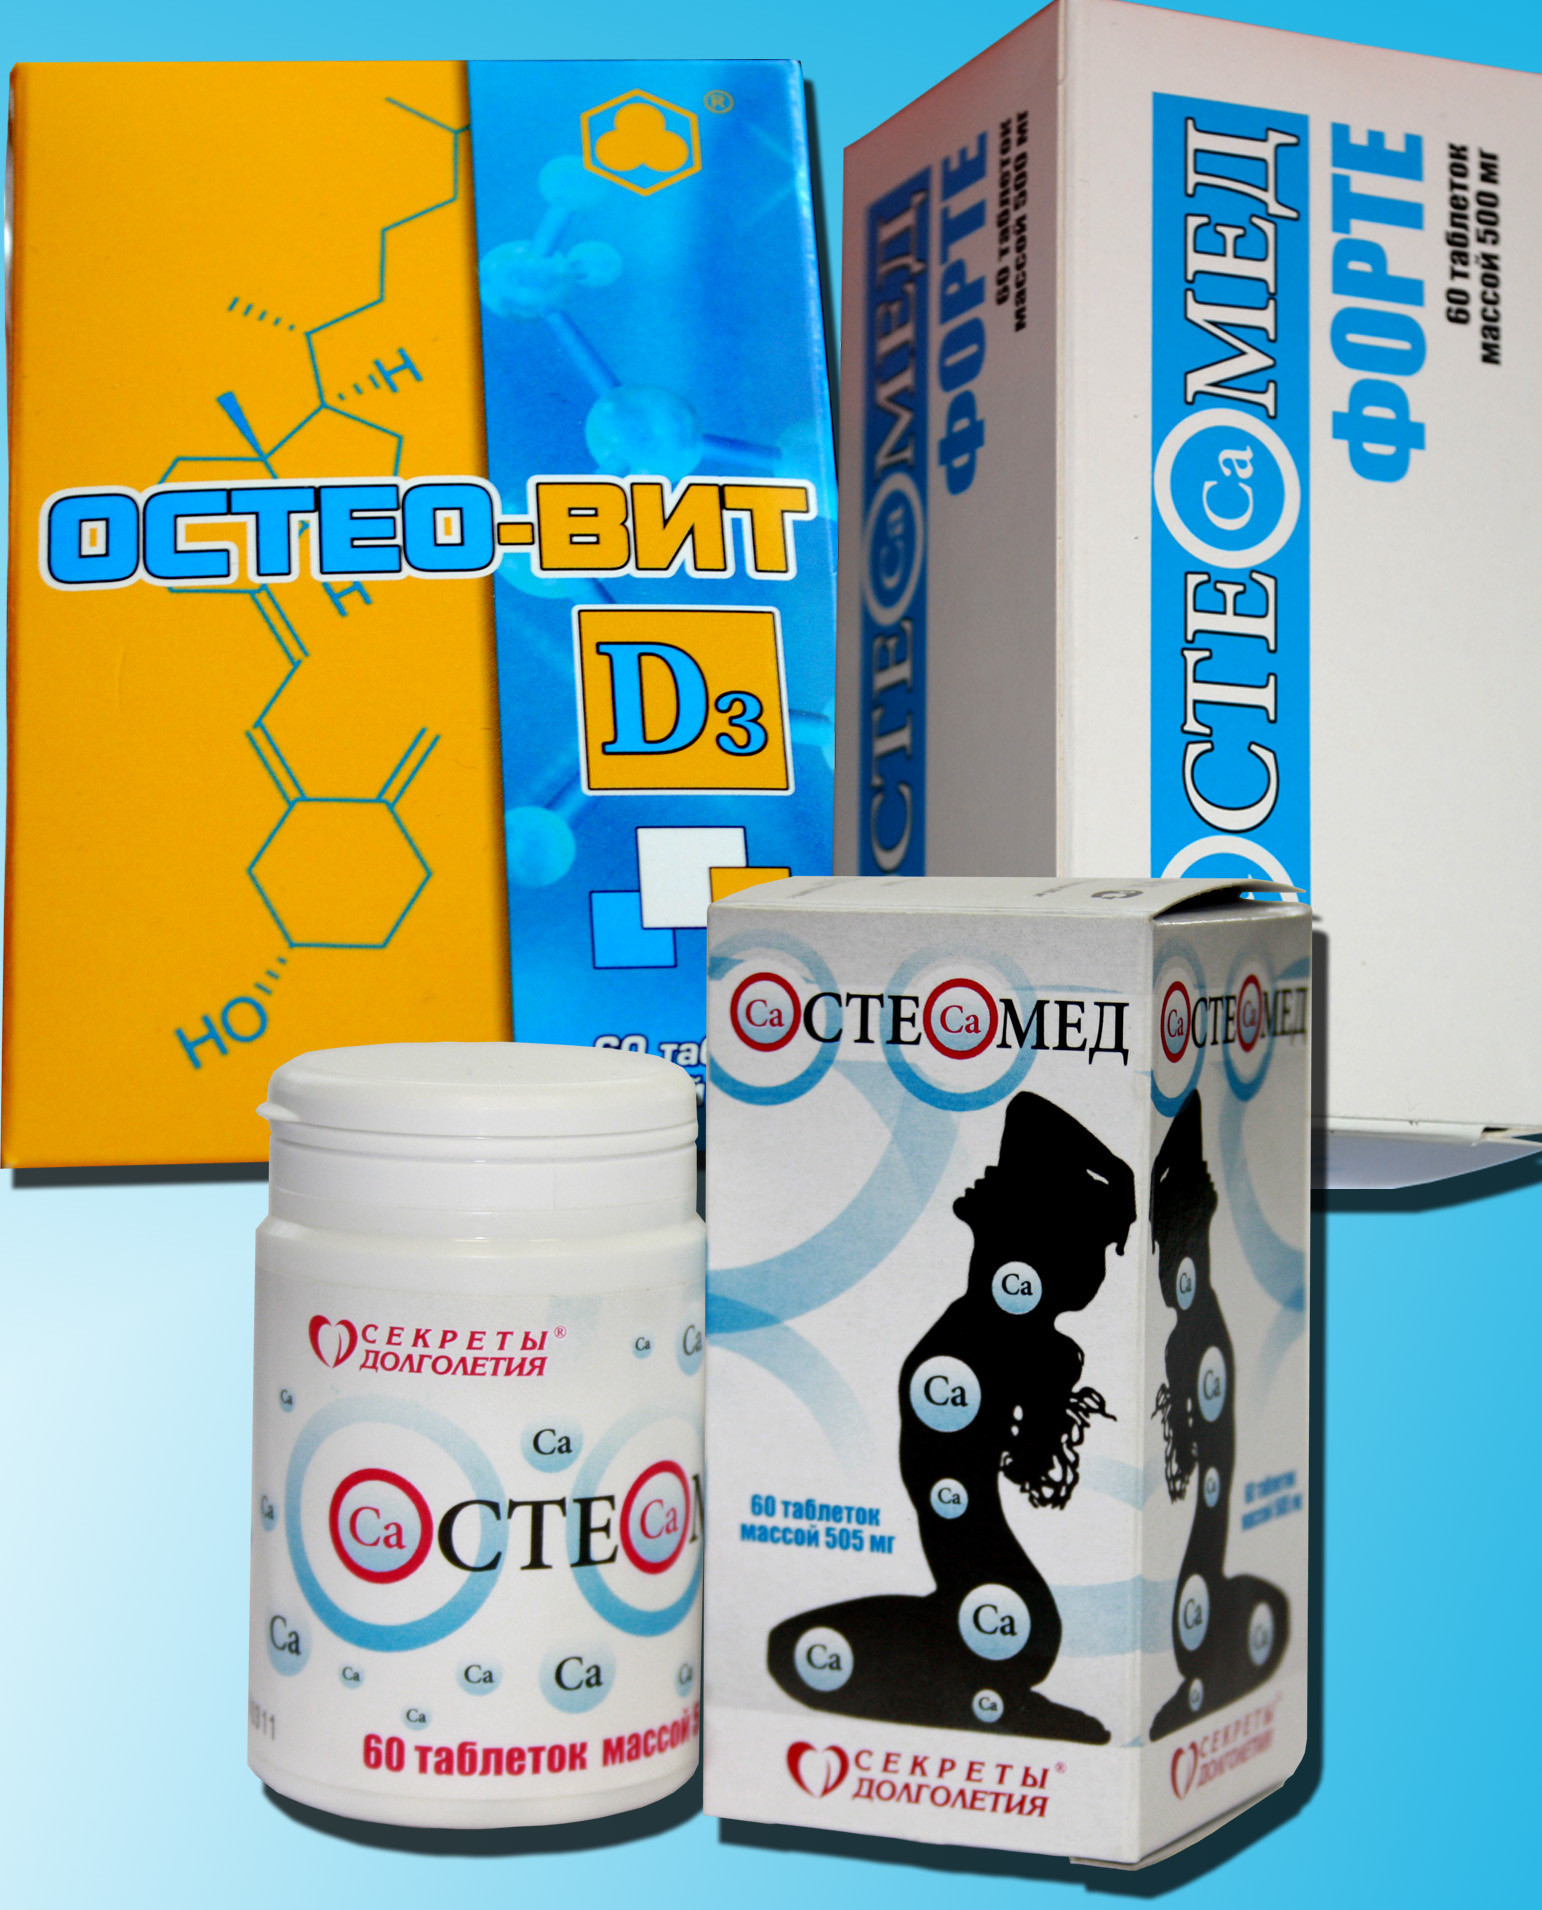 Остеомед, Остеомед Форте и Остео-Вит на выставке "Аптека 2013"